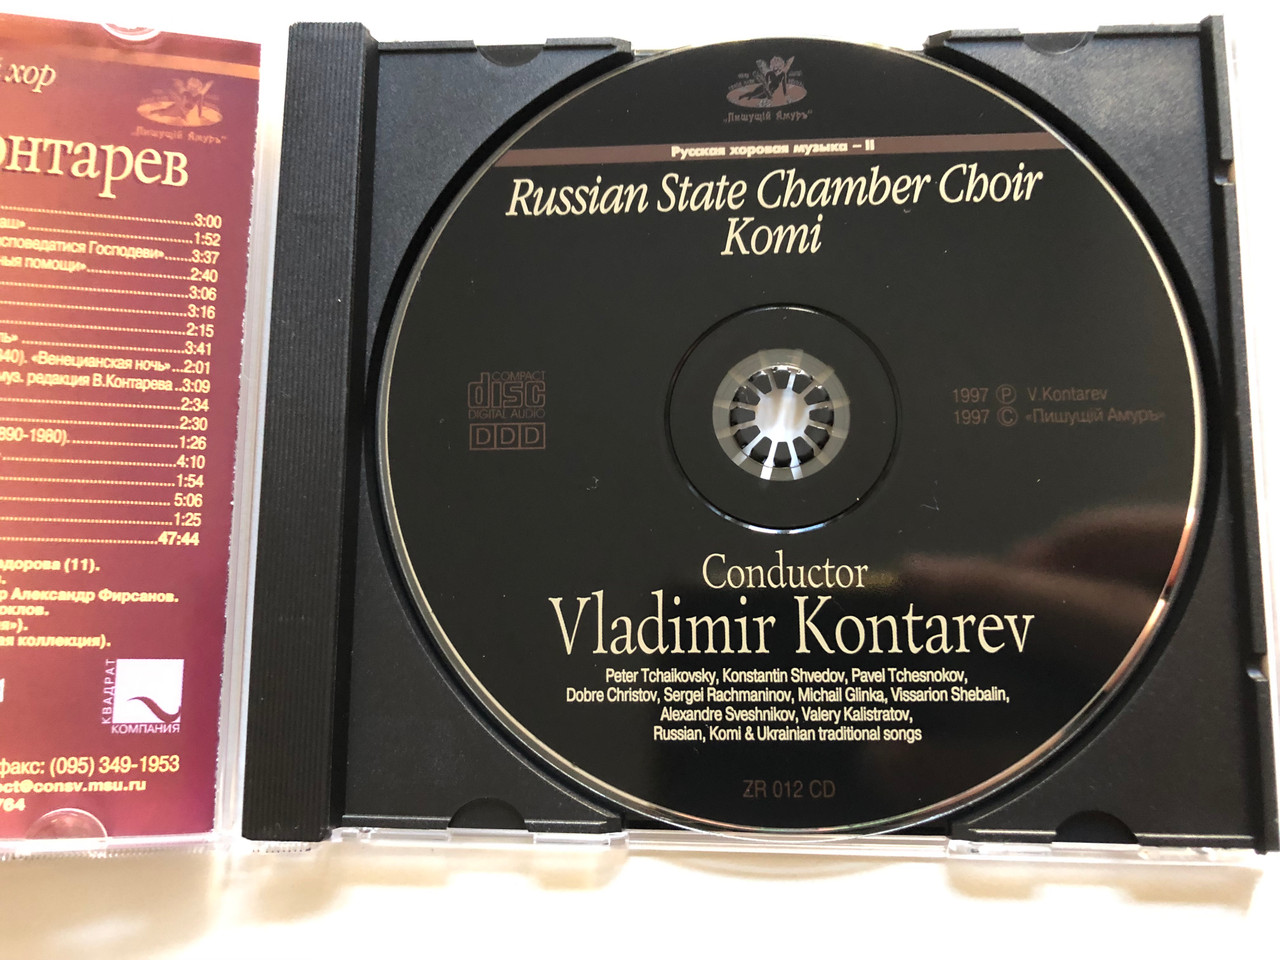 https://cdn10.bigcommerce.com/s-62bdpkt7pb/products/0/images/261546/Russian_Choral_Music_-_II_-_Russian_State_Chamber_Choir_Komi_Conductor_Vladimir_Kontarev_Audio_CD_1997_ZR_012_CD_3__15474.1671550420.1280.1280.JPG?c=2&_gl=1*1epplxr*_ga*MjA2NTIxMjE2MC4xNTkwNTEyNTMy*_ga_WS2VZYPC6G*MTY3MTU0NzQ4NS42NzkuMS4xNjcxNTUwMjA0LjU3LjAuMA..